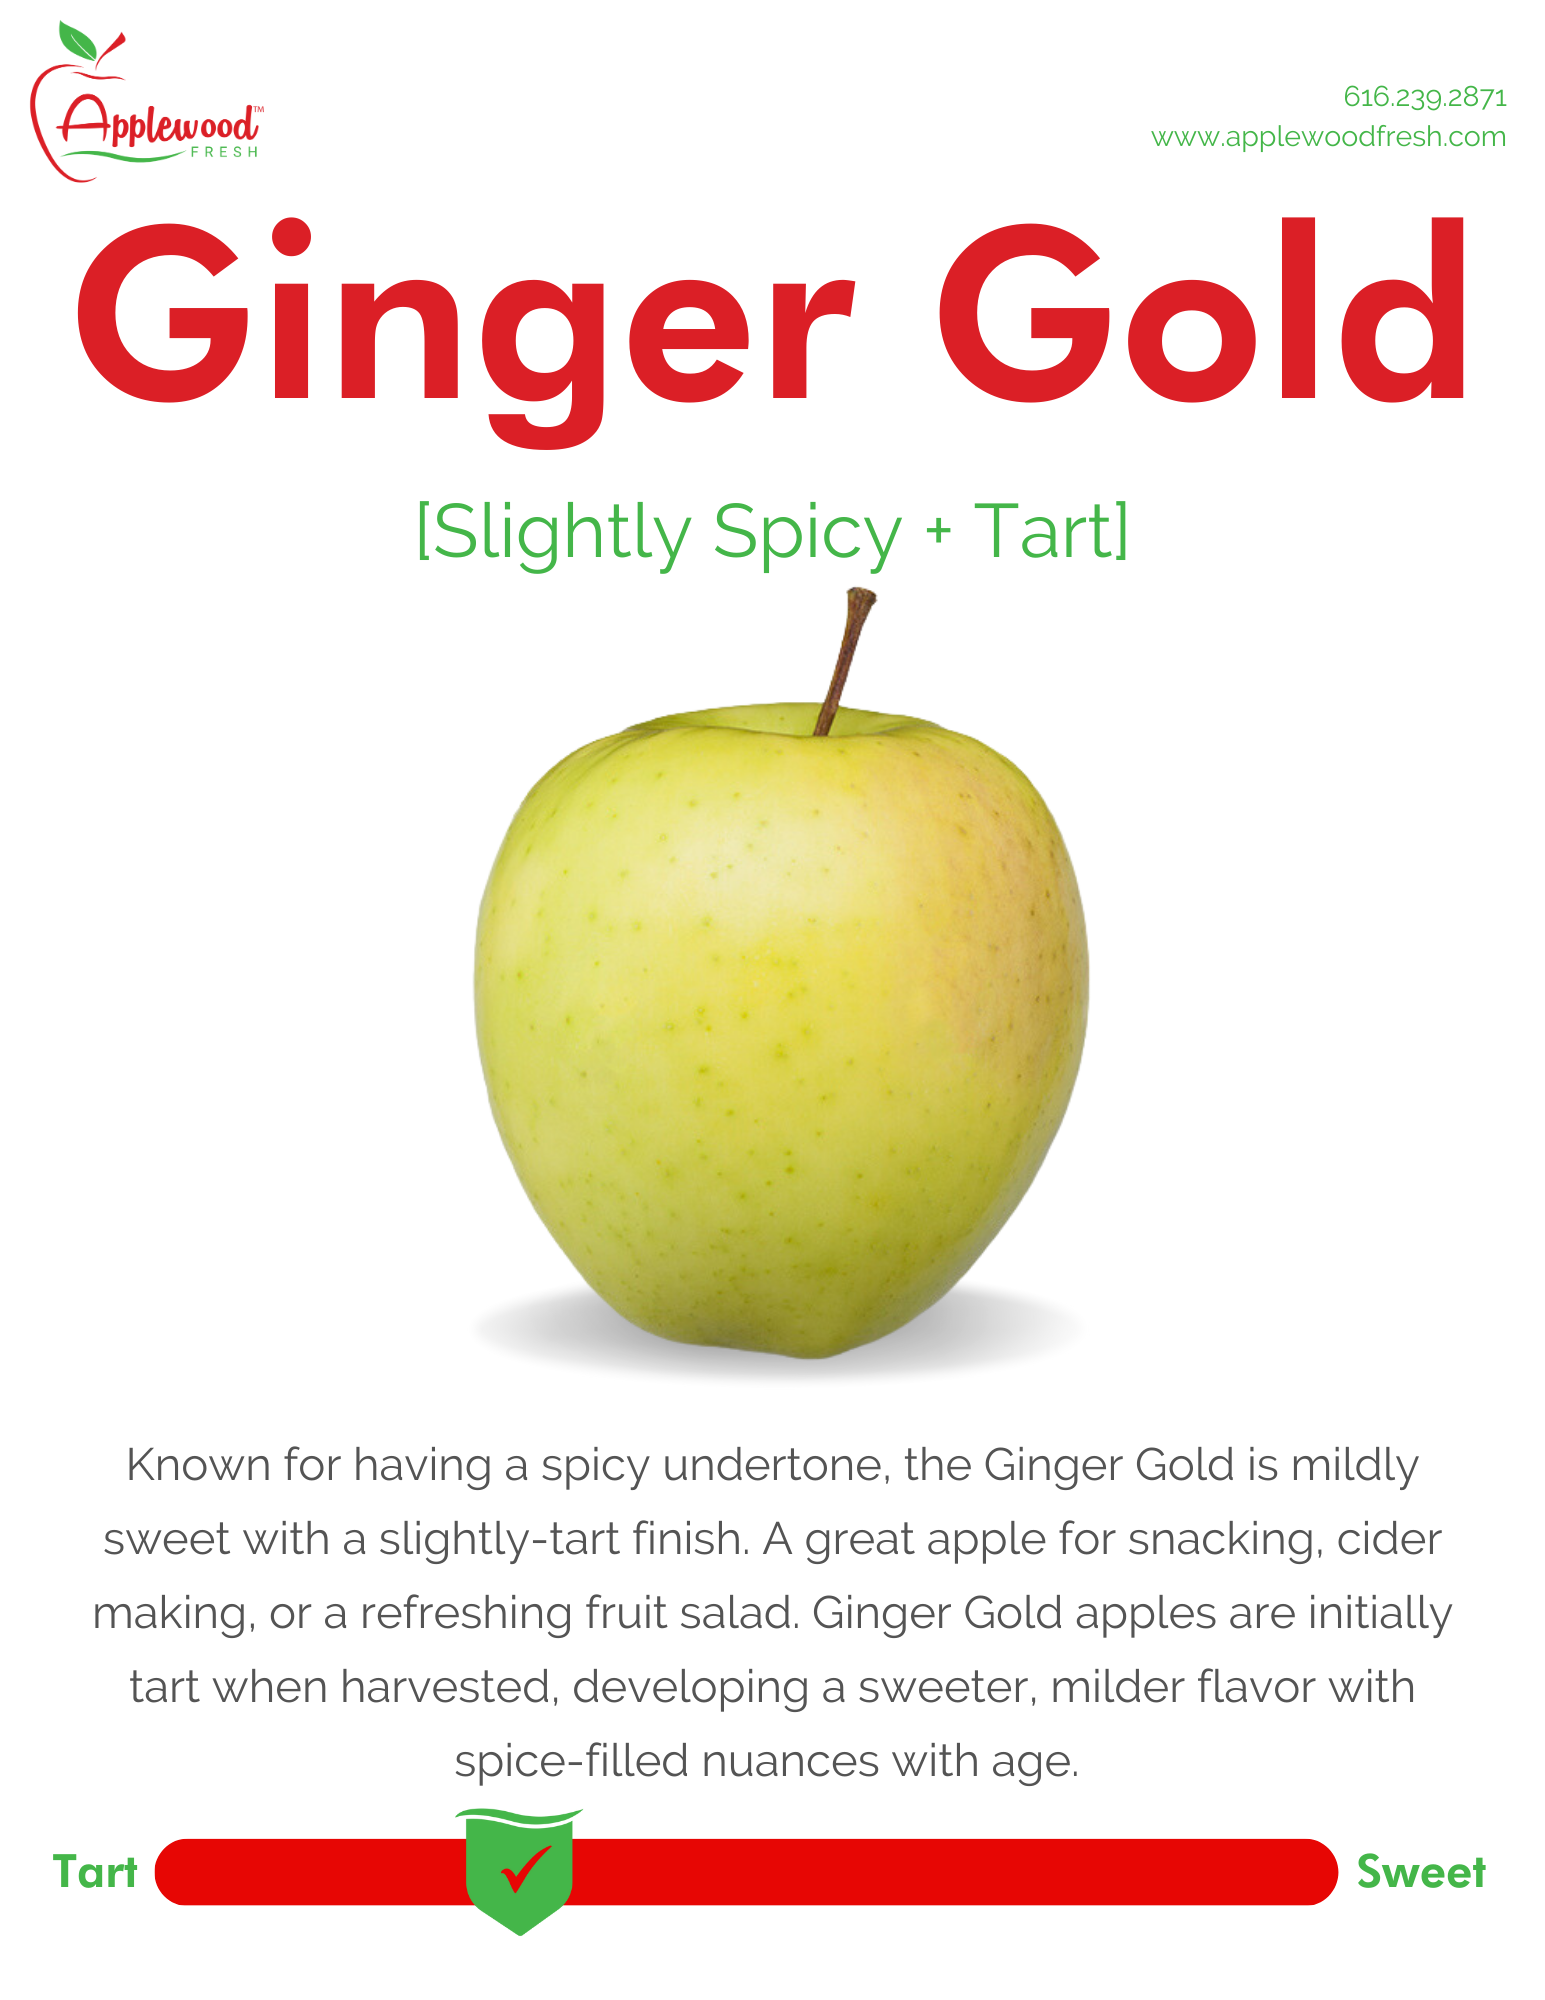 Ginger Gold Apple Information